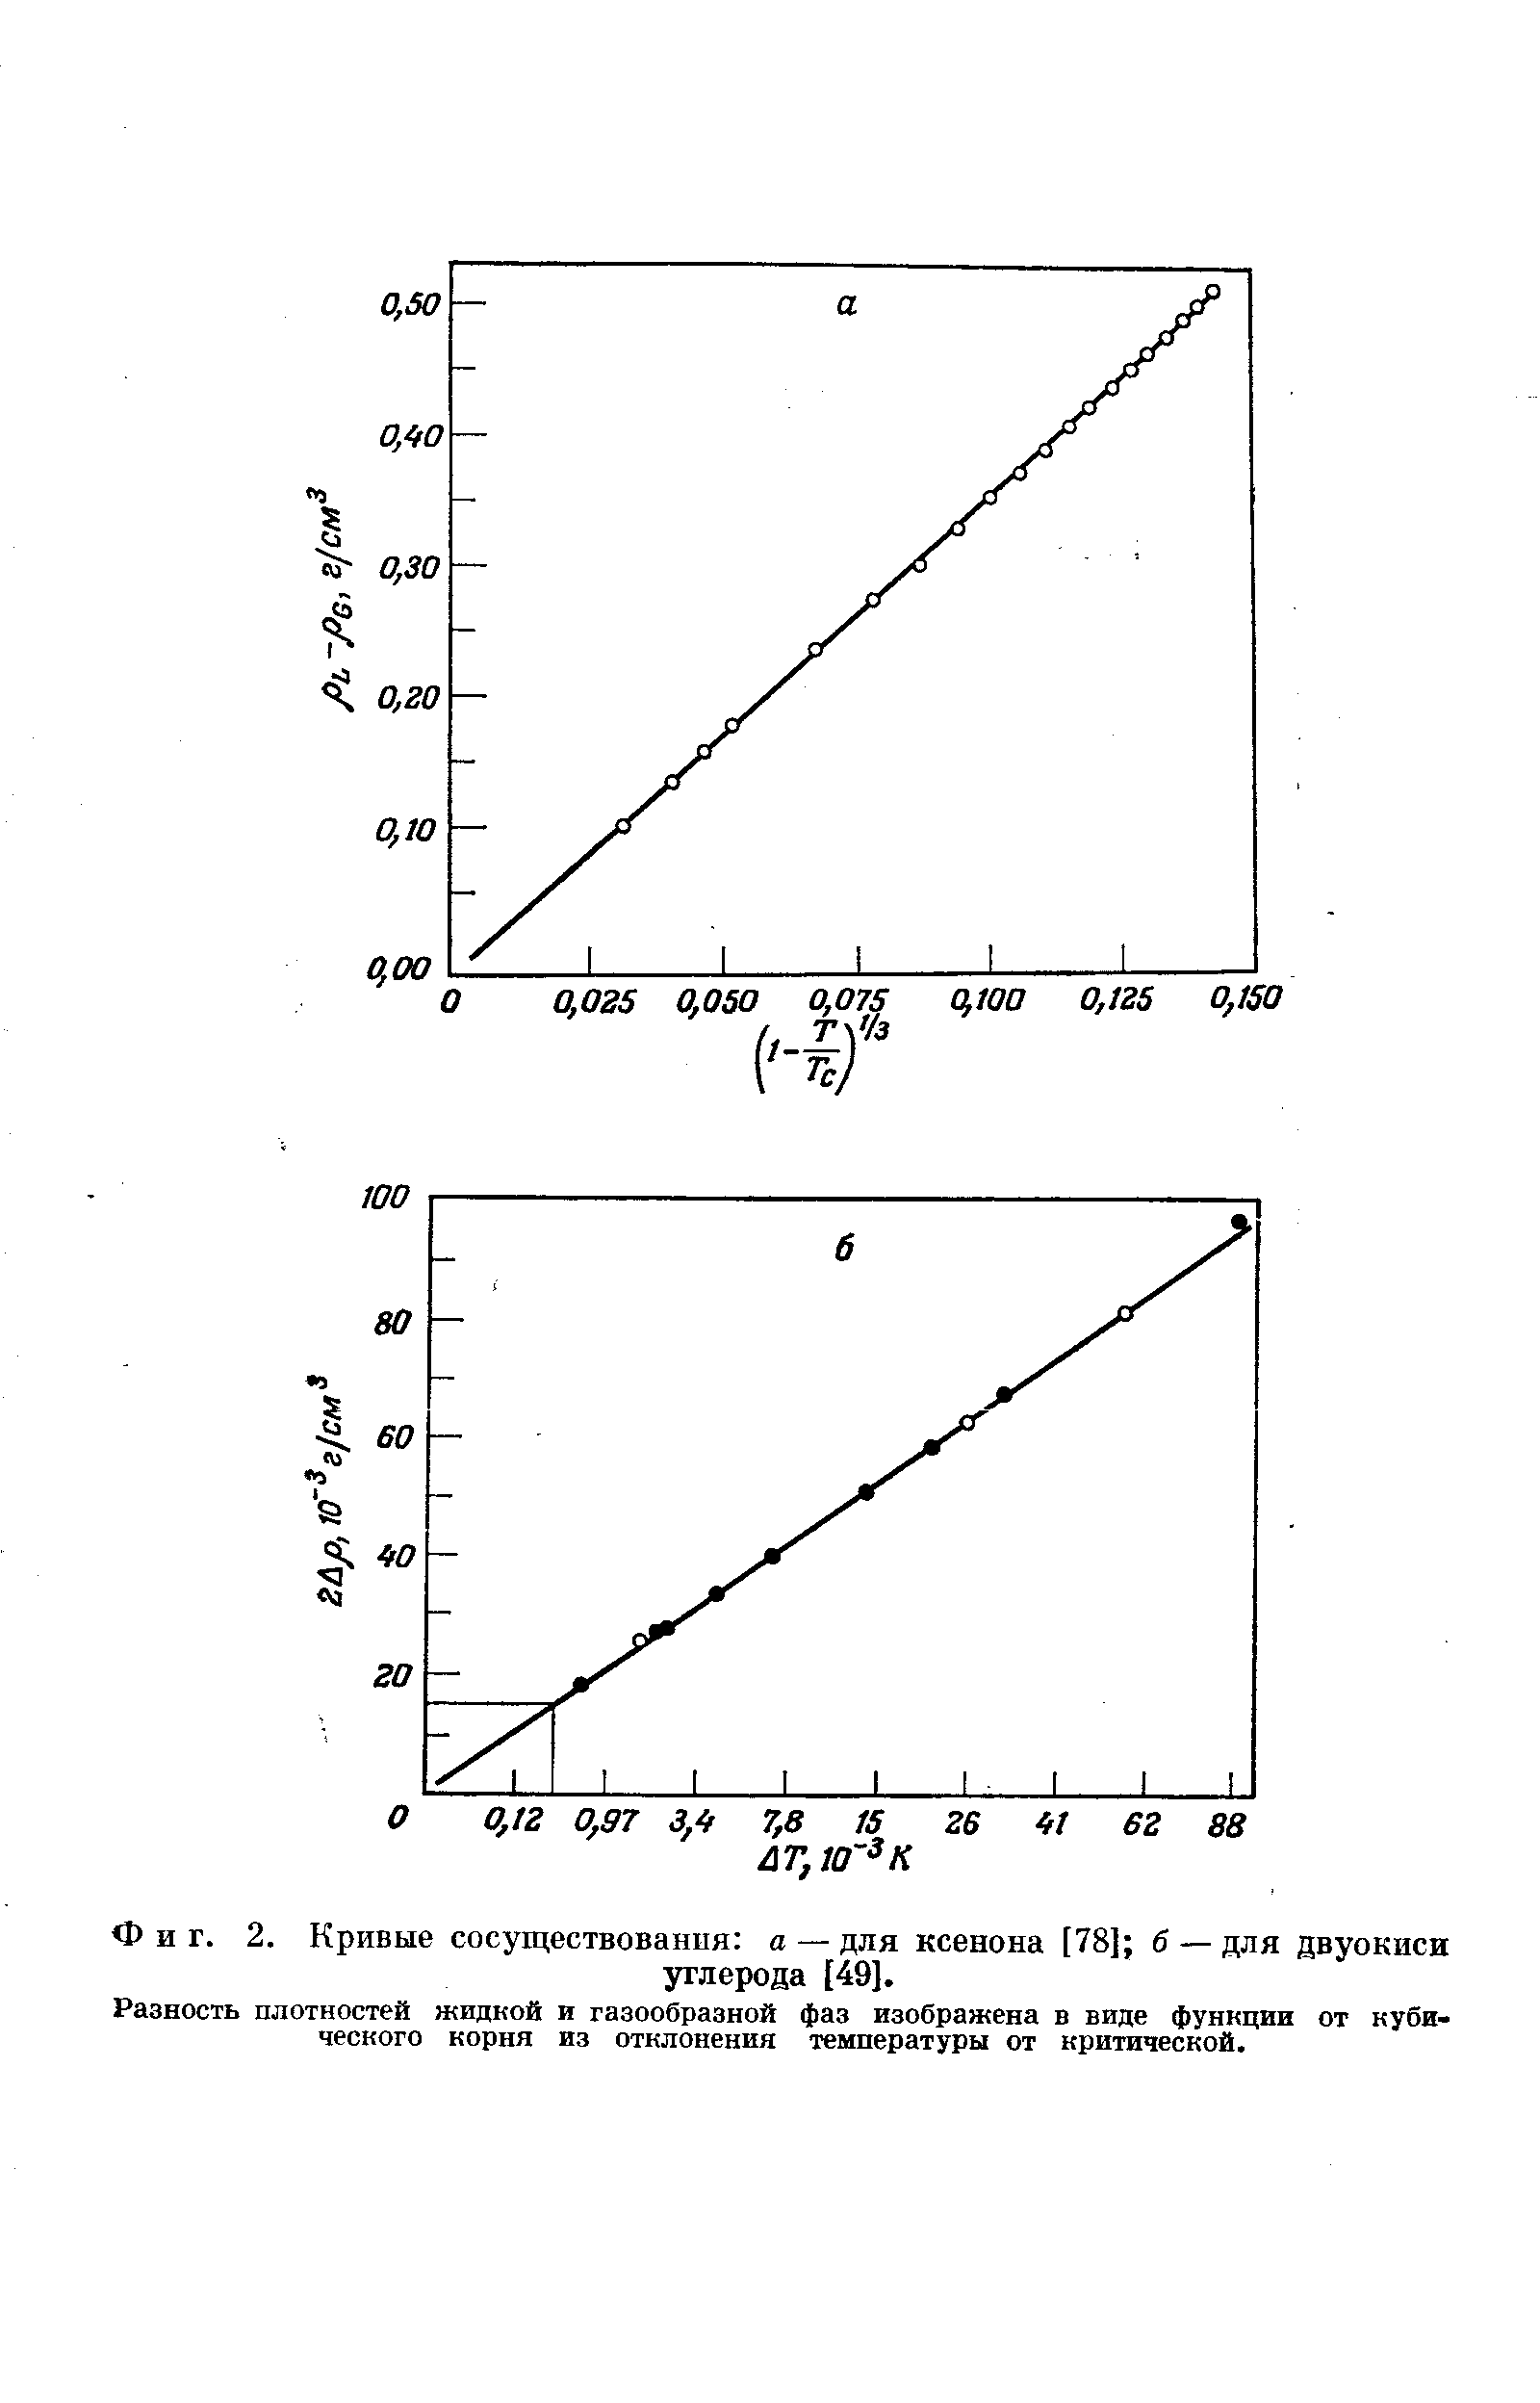 Фиг. 2. Кривые сосуществования а — для ксенона [78] б — для двуокиси
